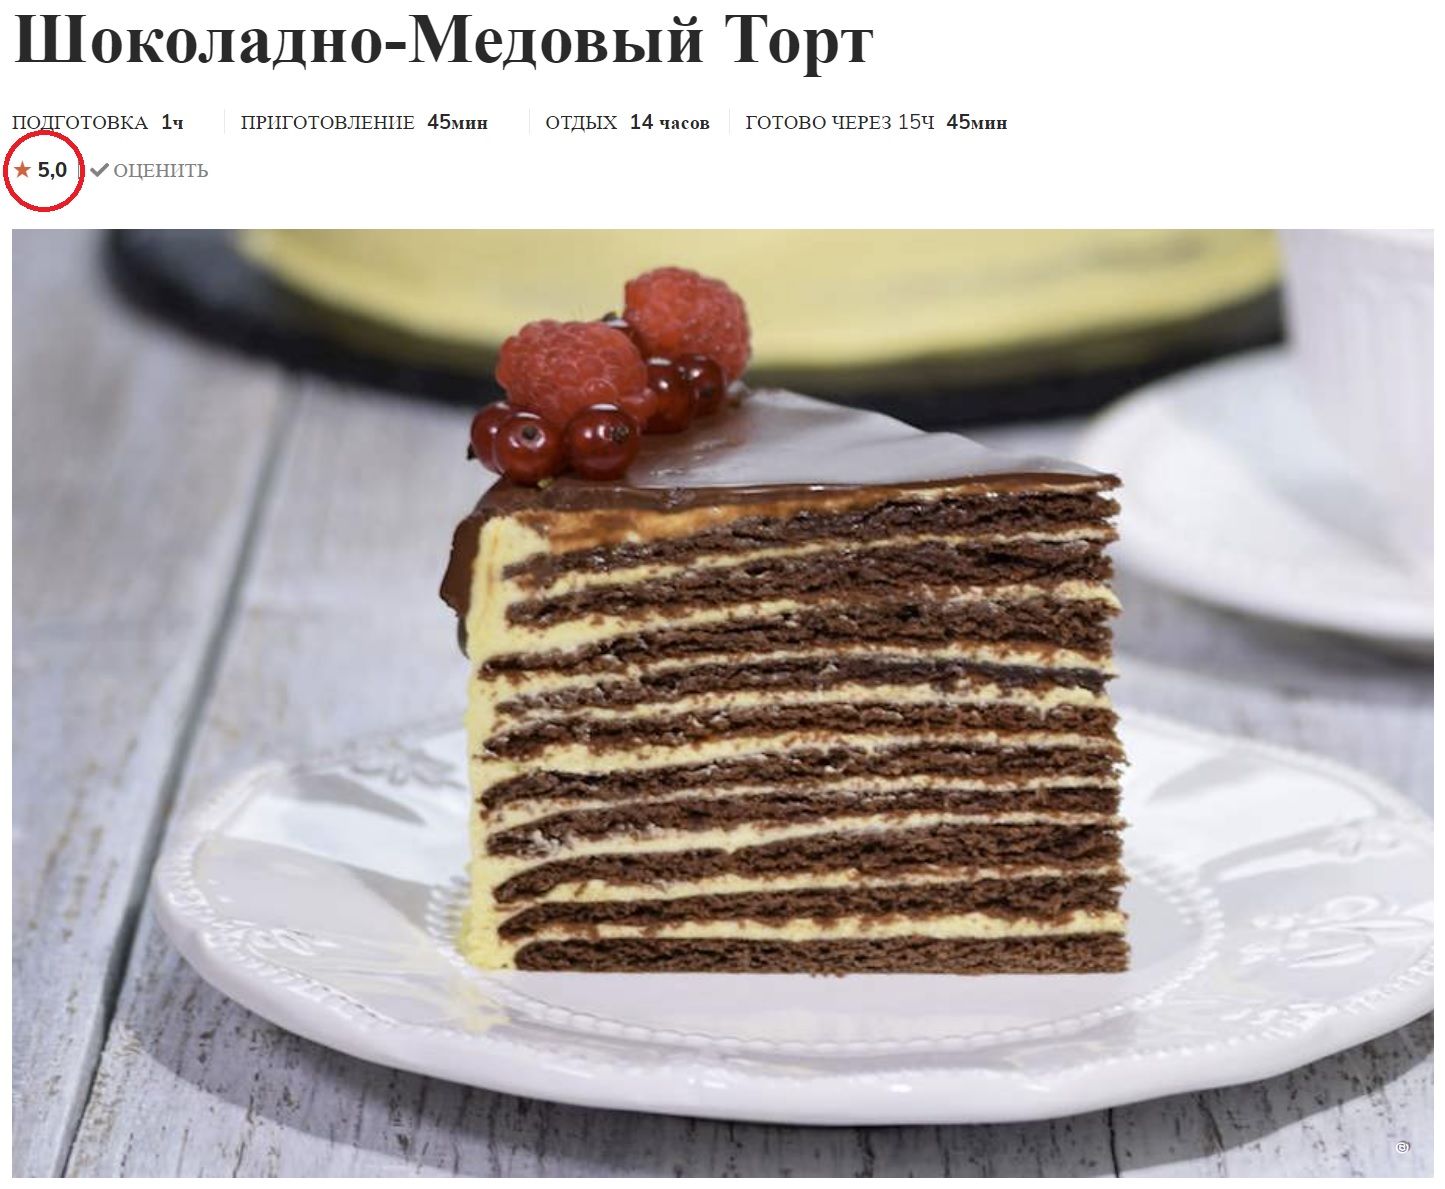 Калашный Ряд - магазин молока и хлеба, а также ресторан настоящей русской кухни